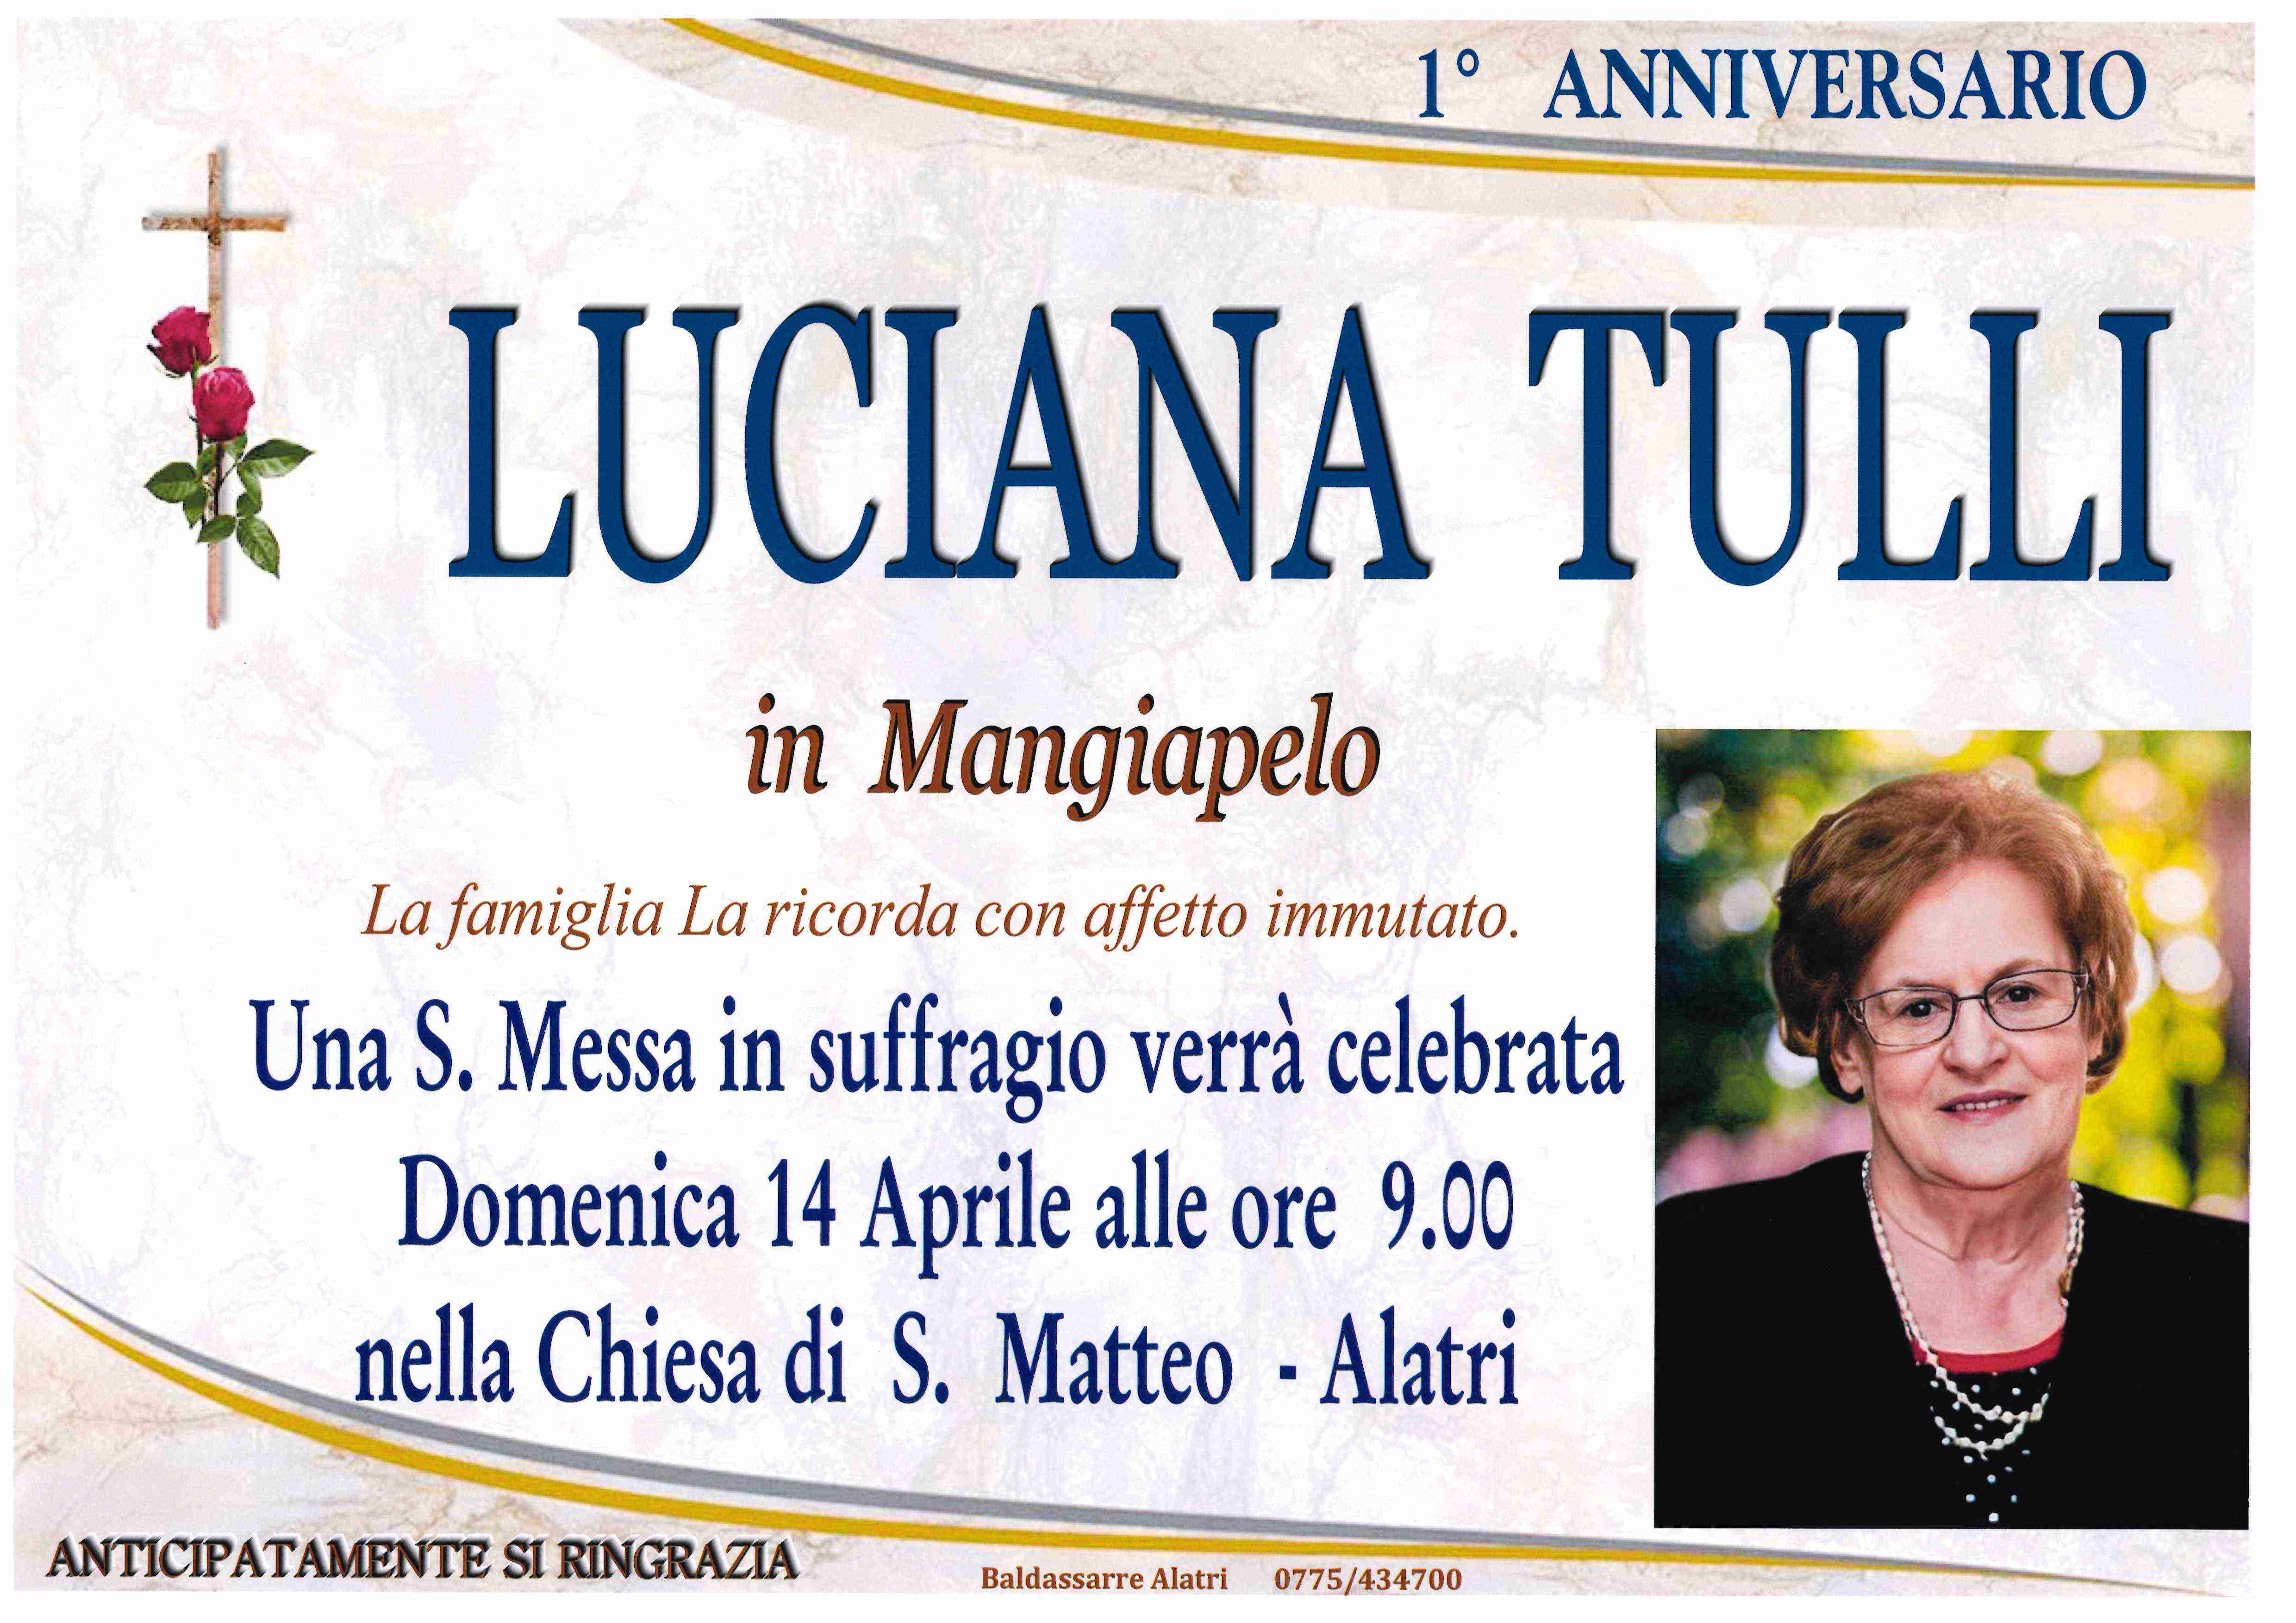 Luciana Tulli